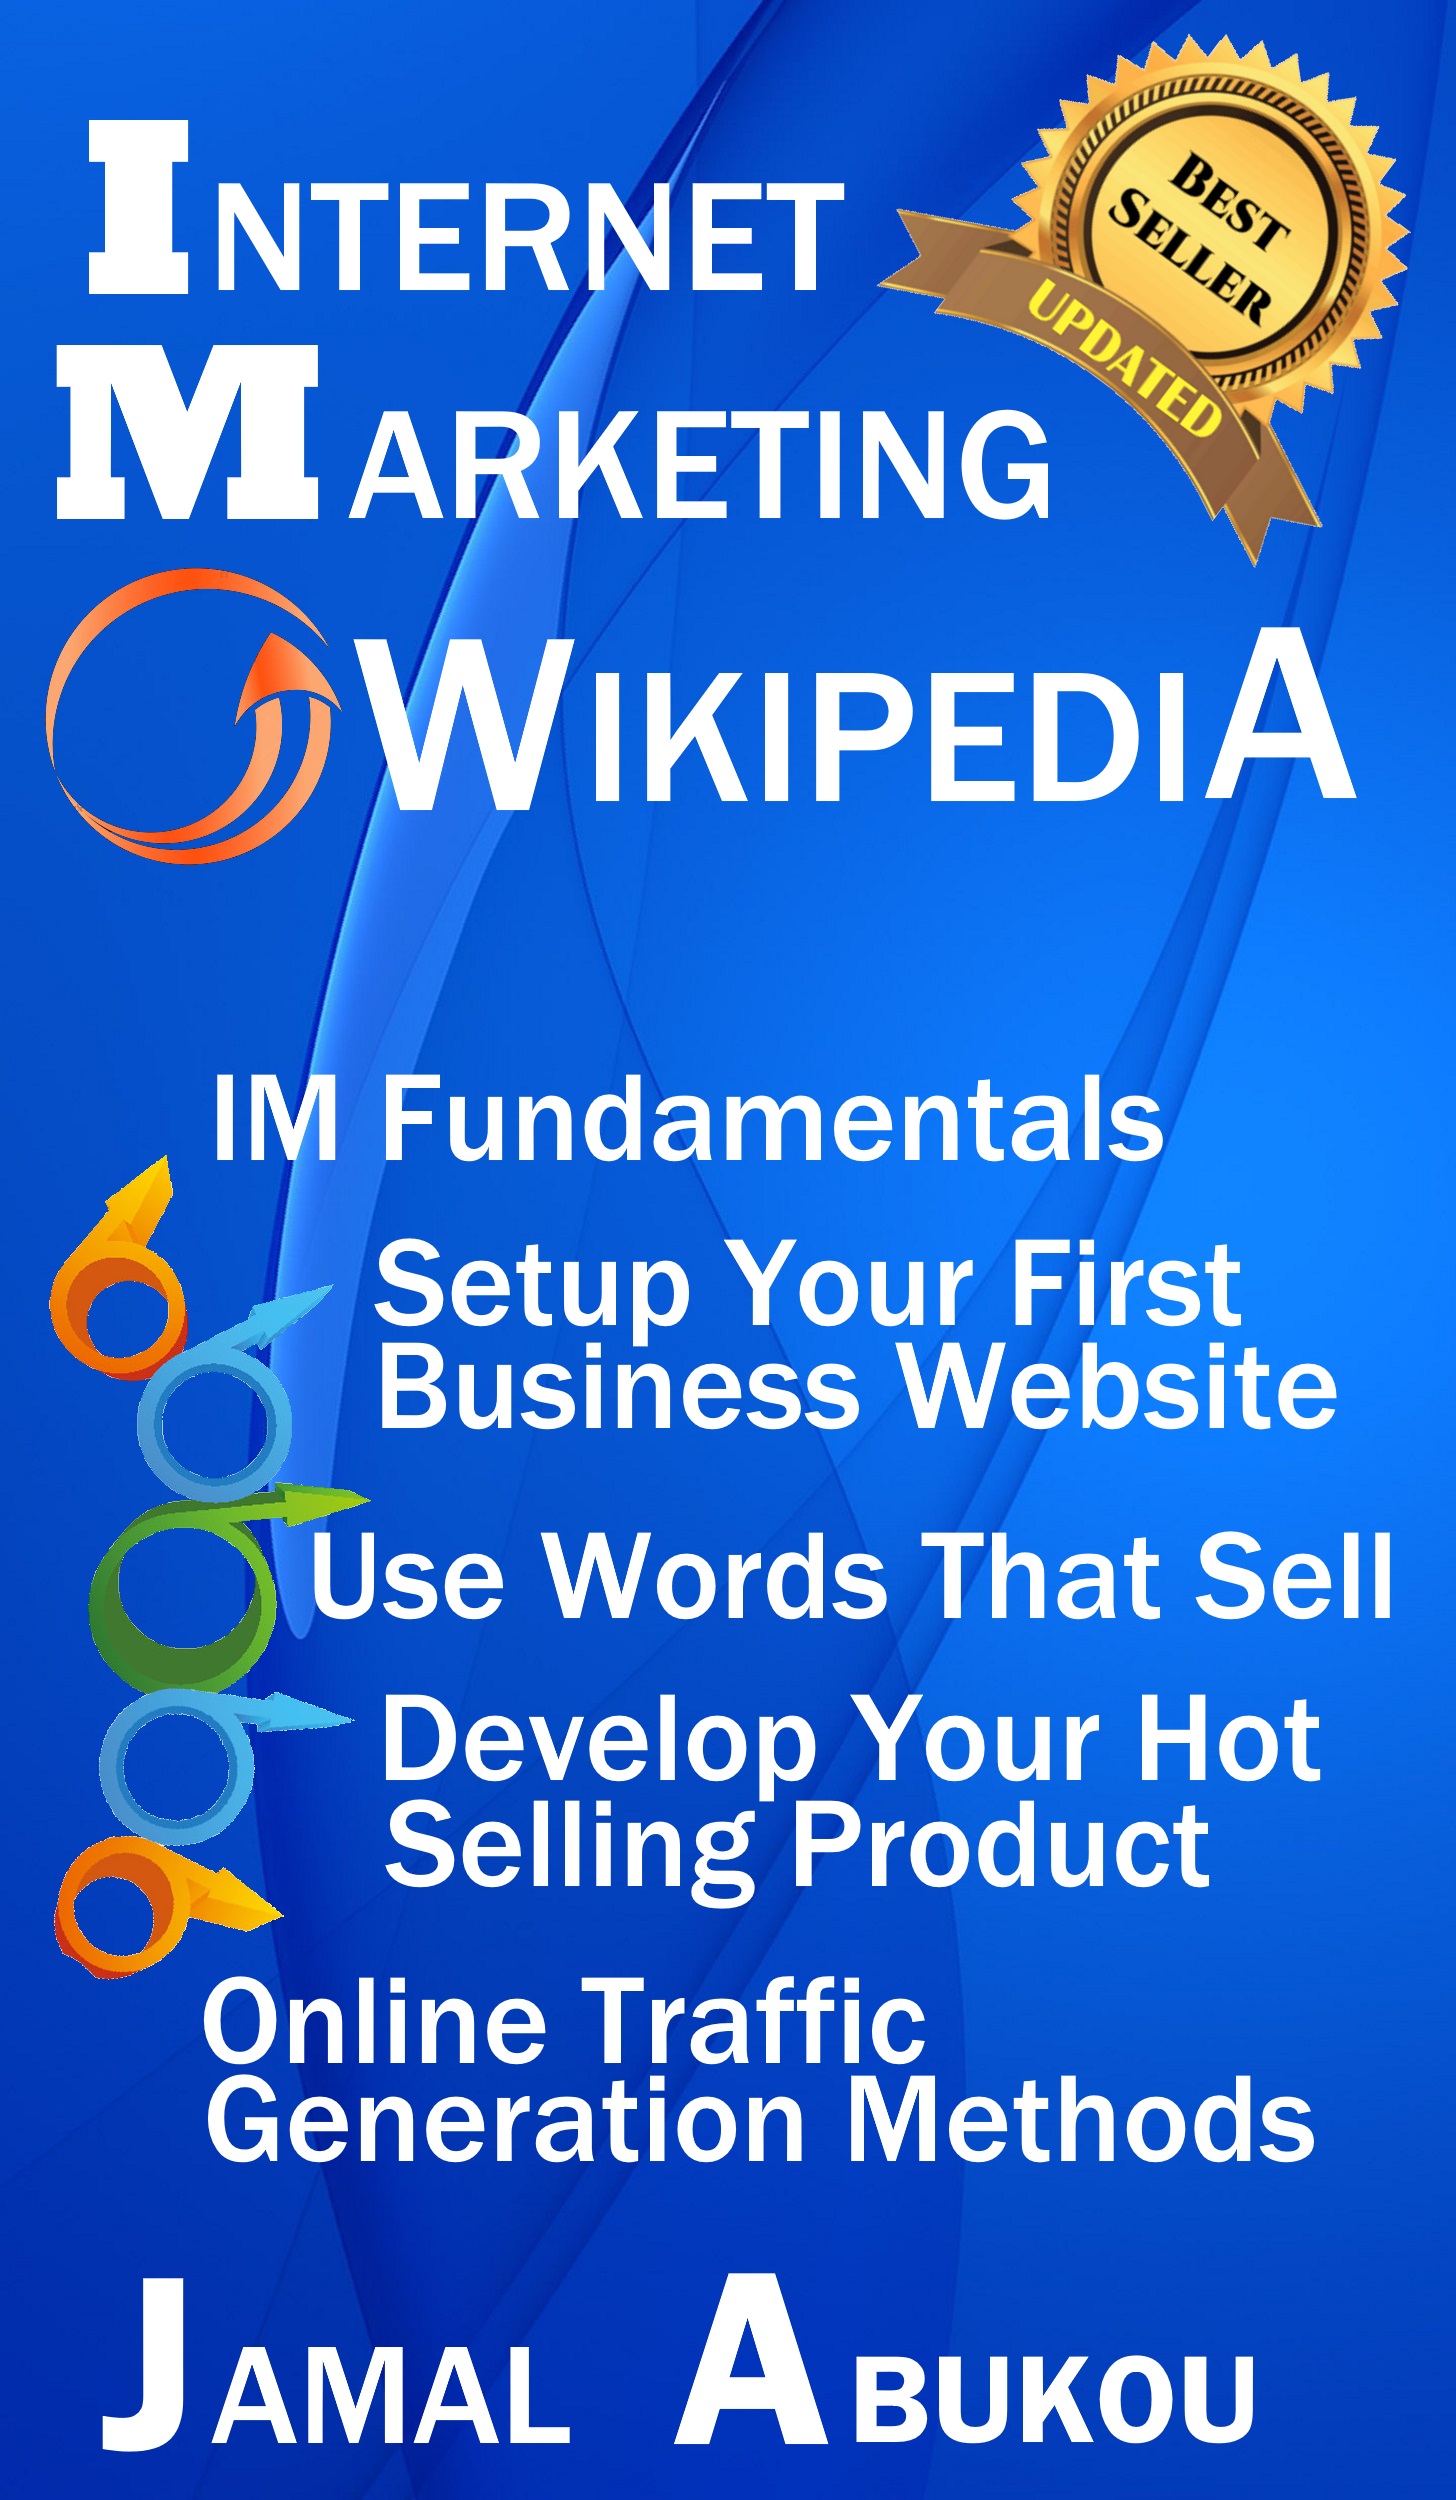 FREE: Internet Marketing Wikipedia by Jamal Abukou